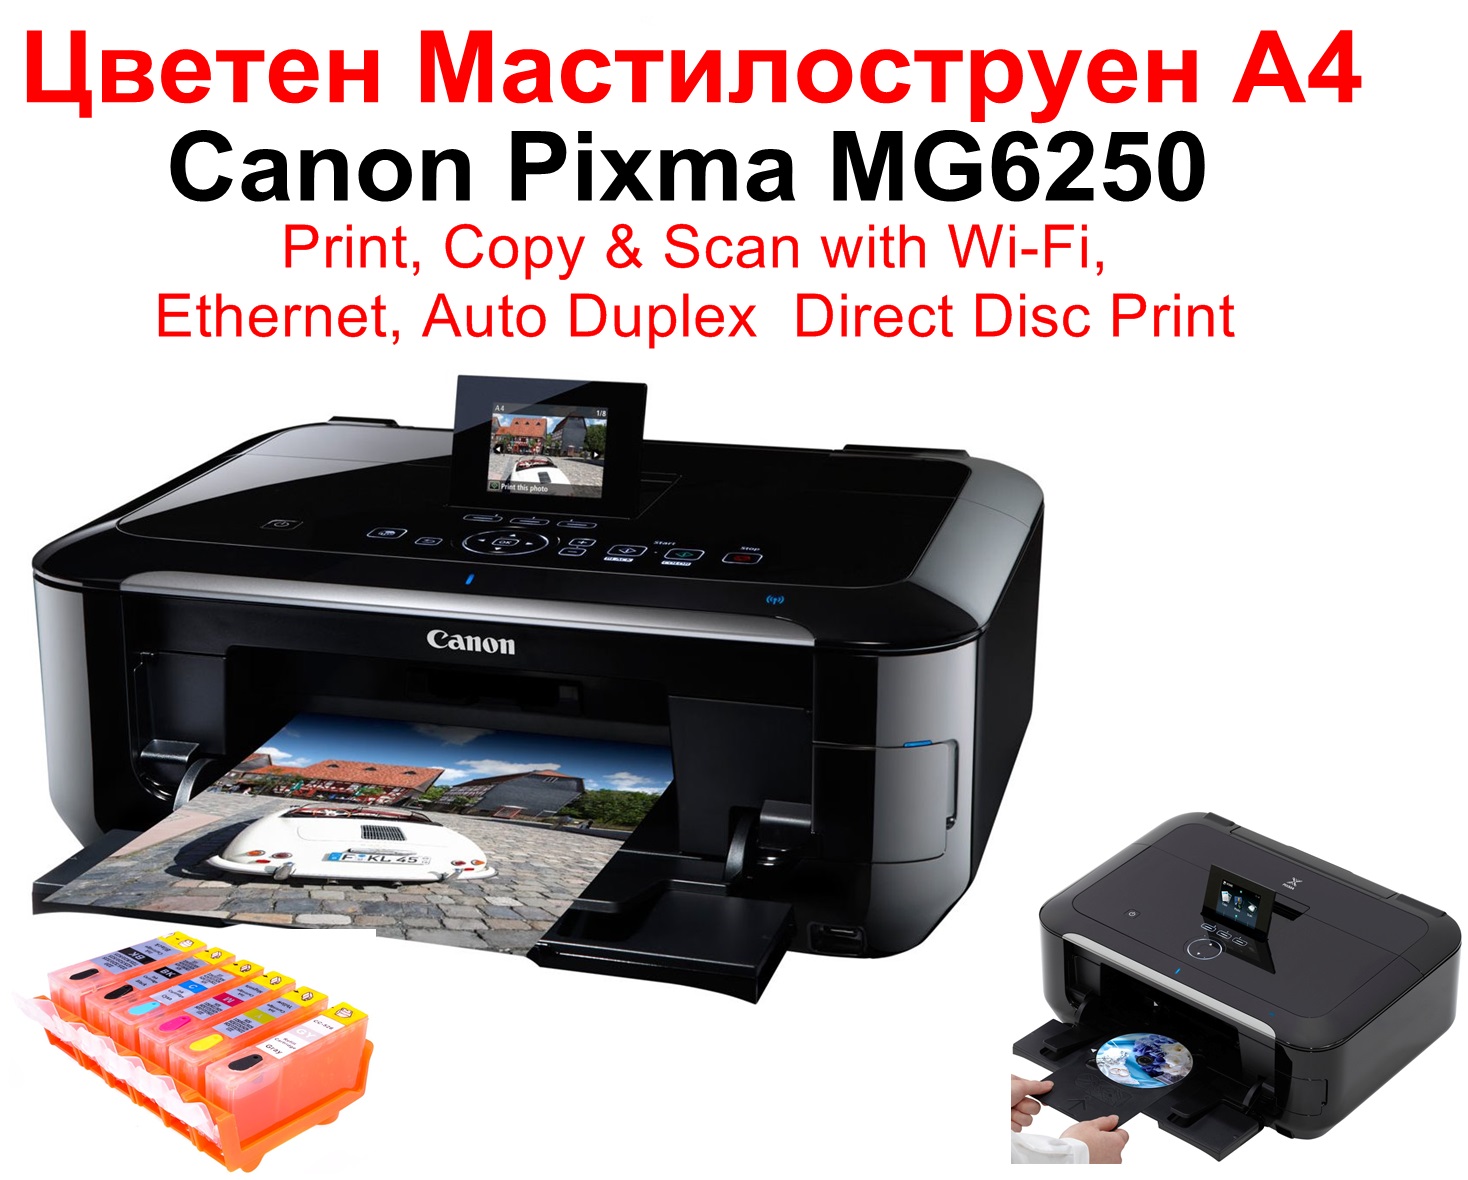 All-in-One Printer Canon Pixma MG6250